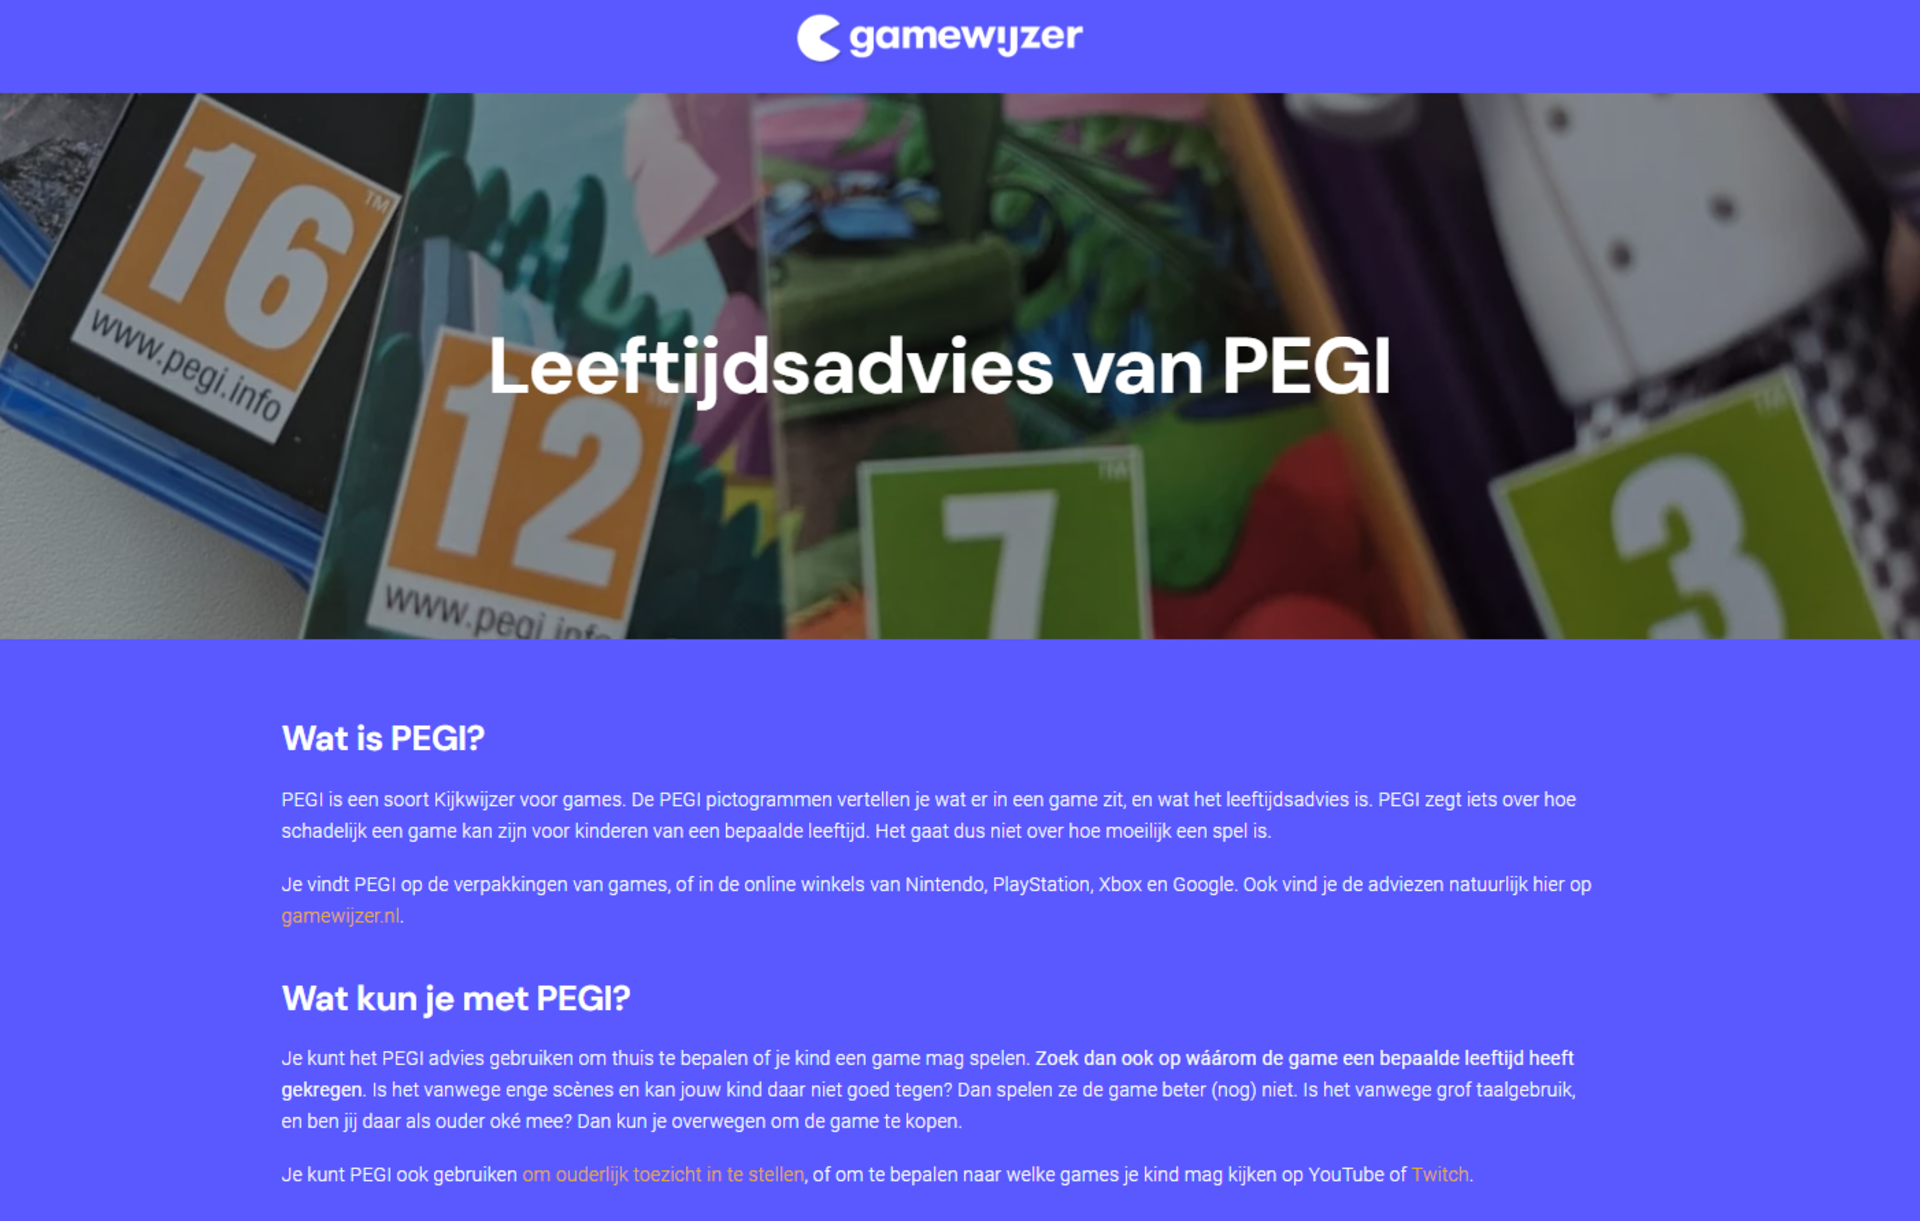 Op de website Gamewijzer staat uitgelegd hoe PEGI werkt